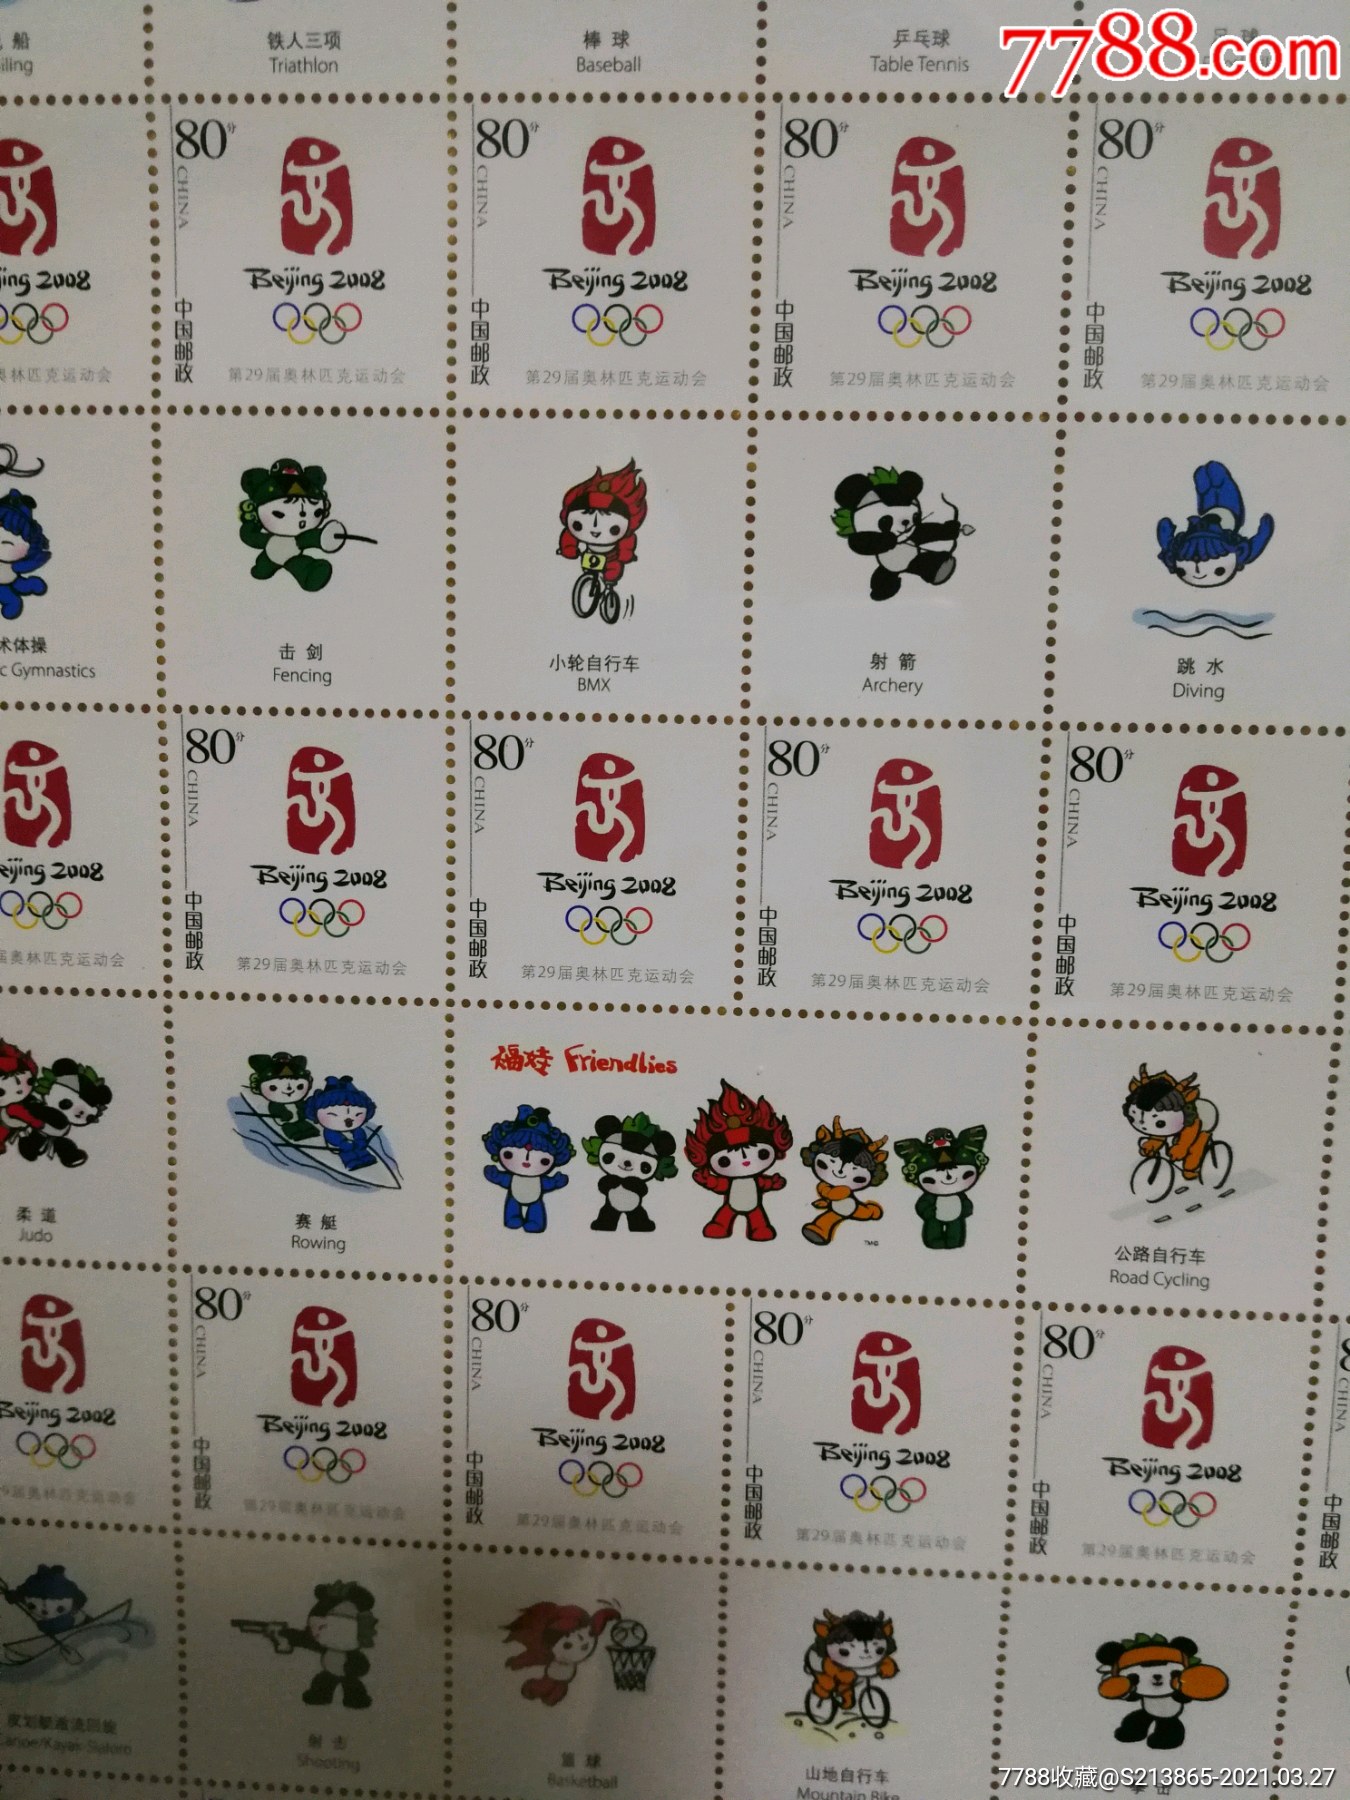 08年北京奥运会邮票